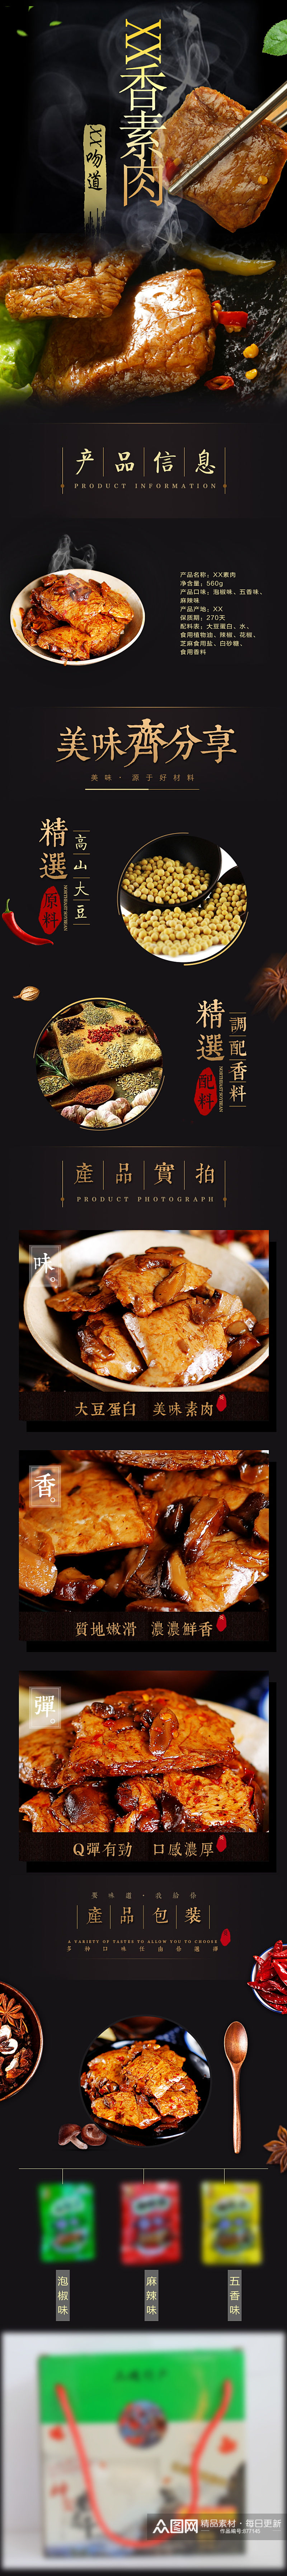 香素肉豆腐食品淘宝天猫详情页素材